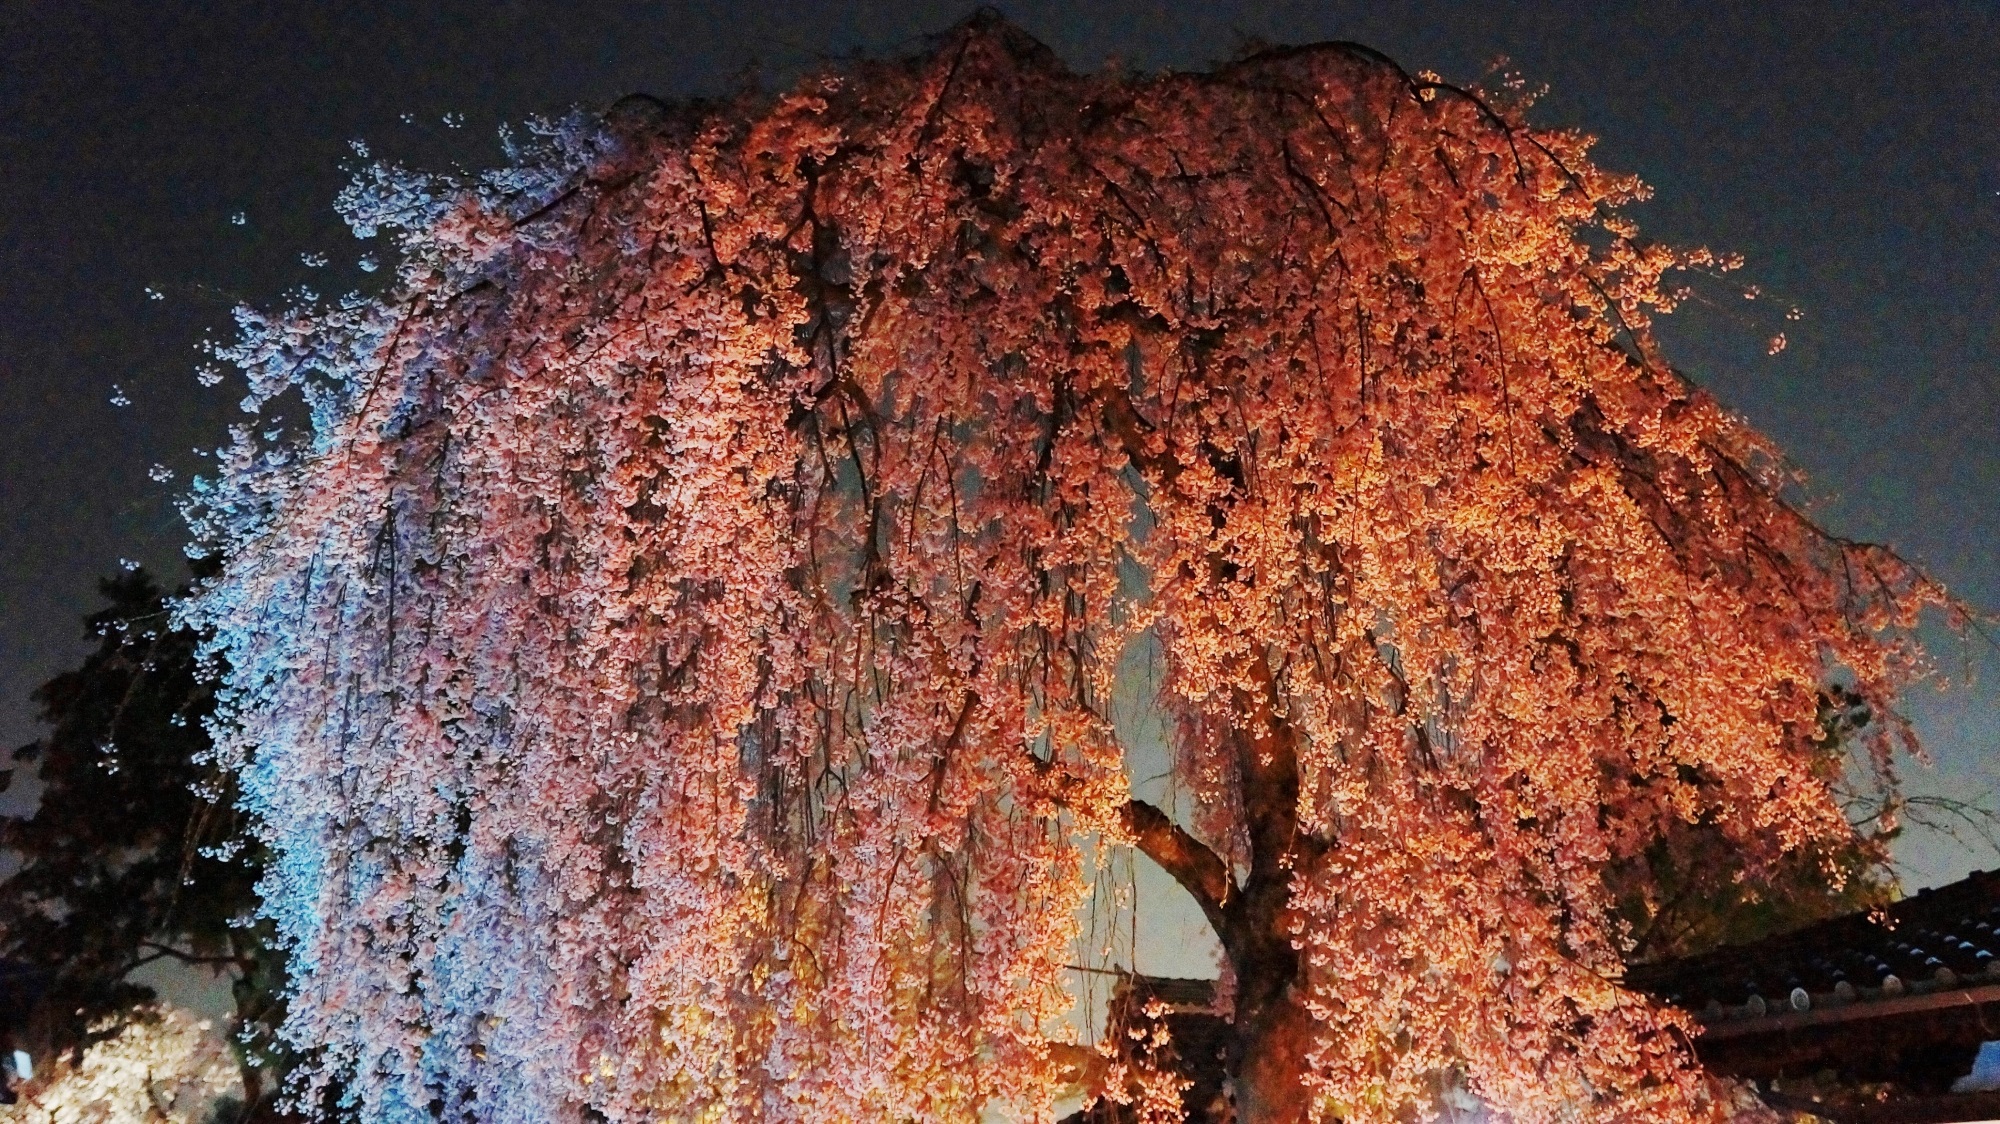 高台寺 桜 ライトアップ 京都の幻想的な夜桜